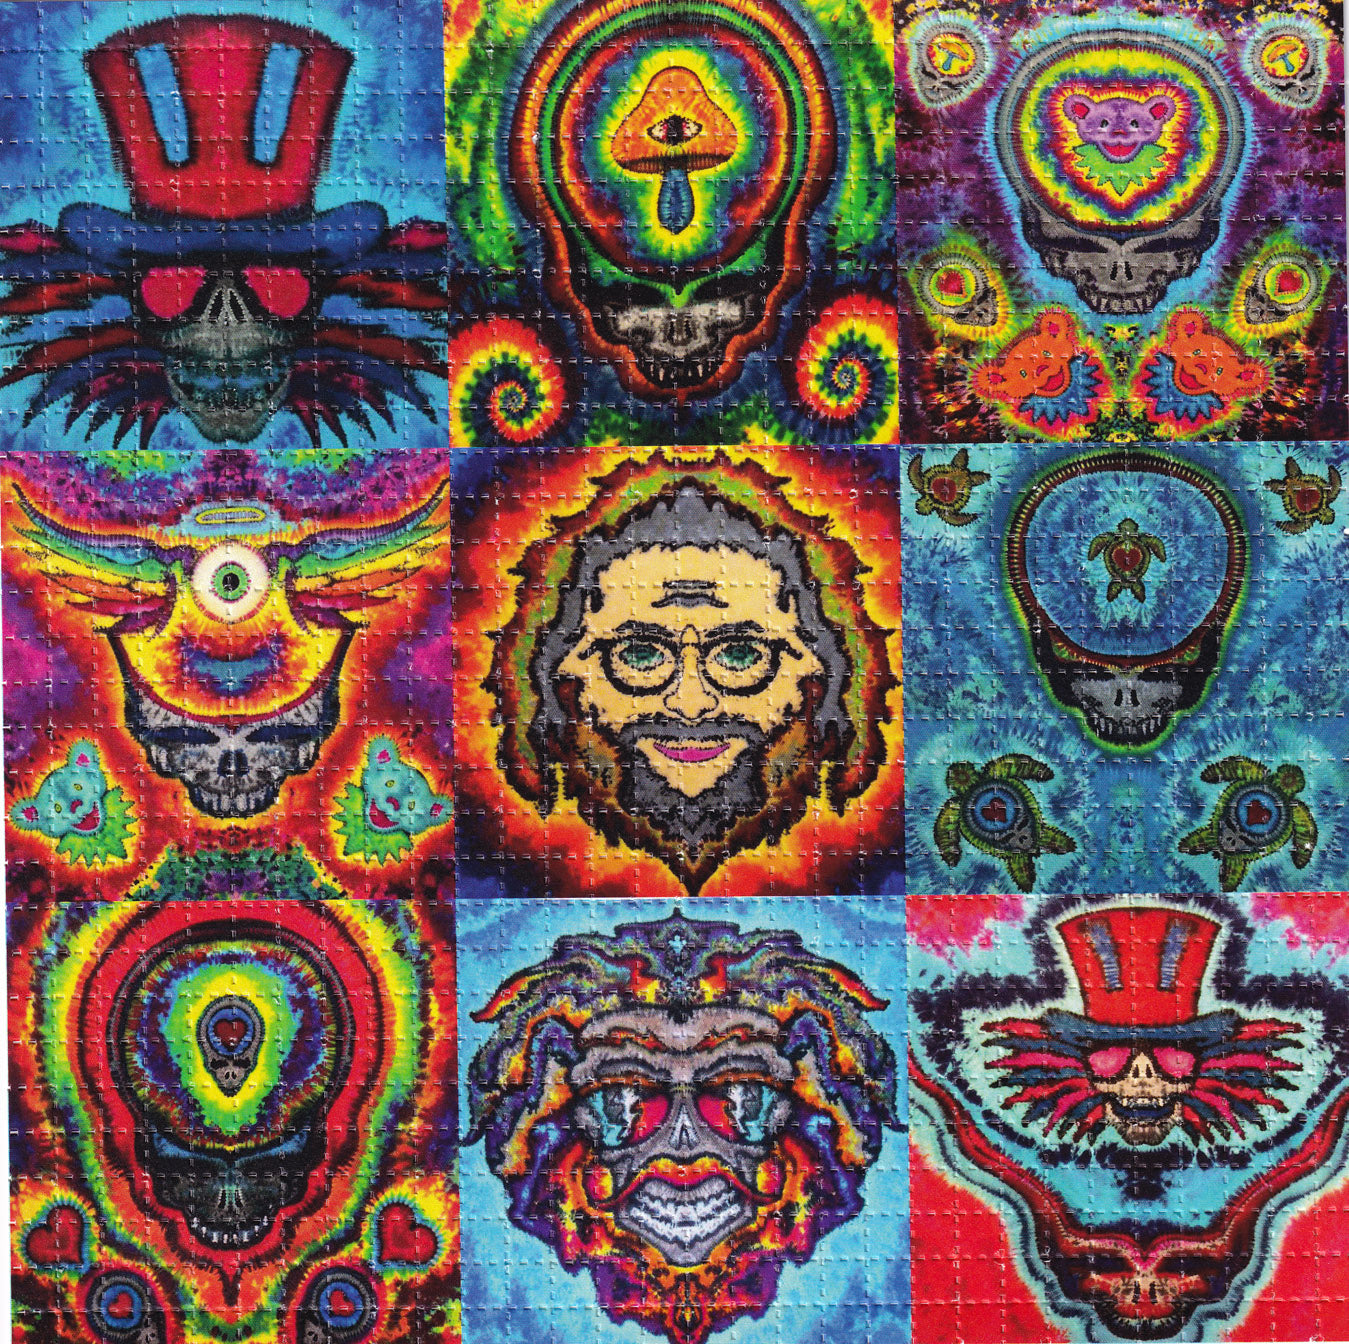 Grateful Jammin' Tie Dye X9 LSD blotter art print